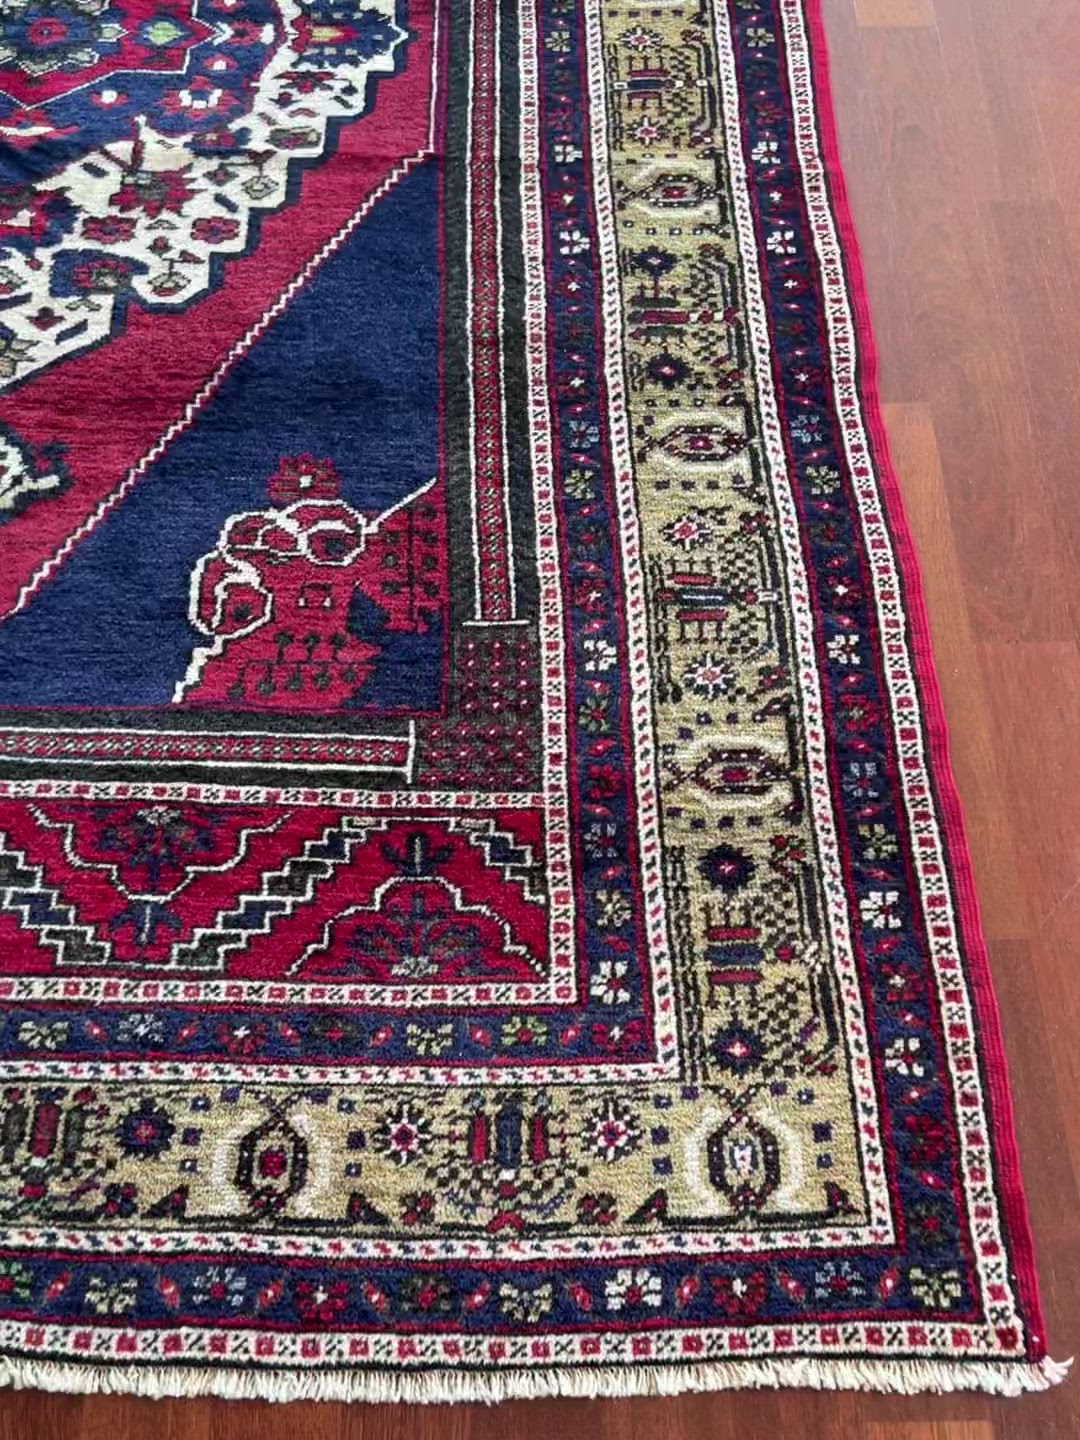 taspinar turkish vintage rug san berkeley oriental rug shop palo alto buy vintage rug san francisco bay area buy rugs online california ca